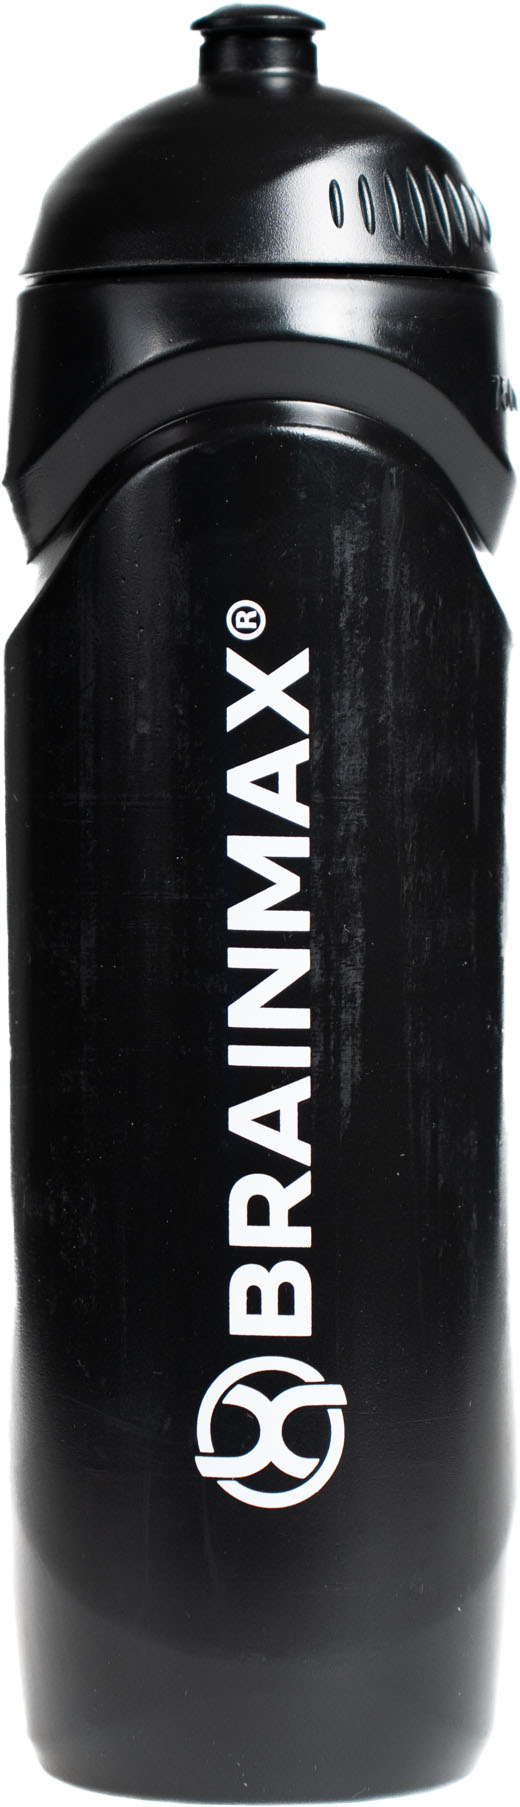 BrainMax láhev na kolo a sport, bidon, černá, 750 ml